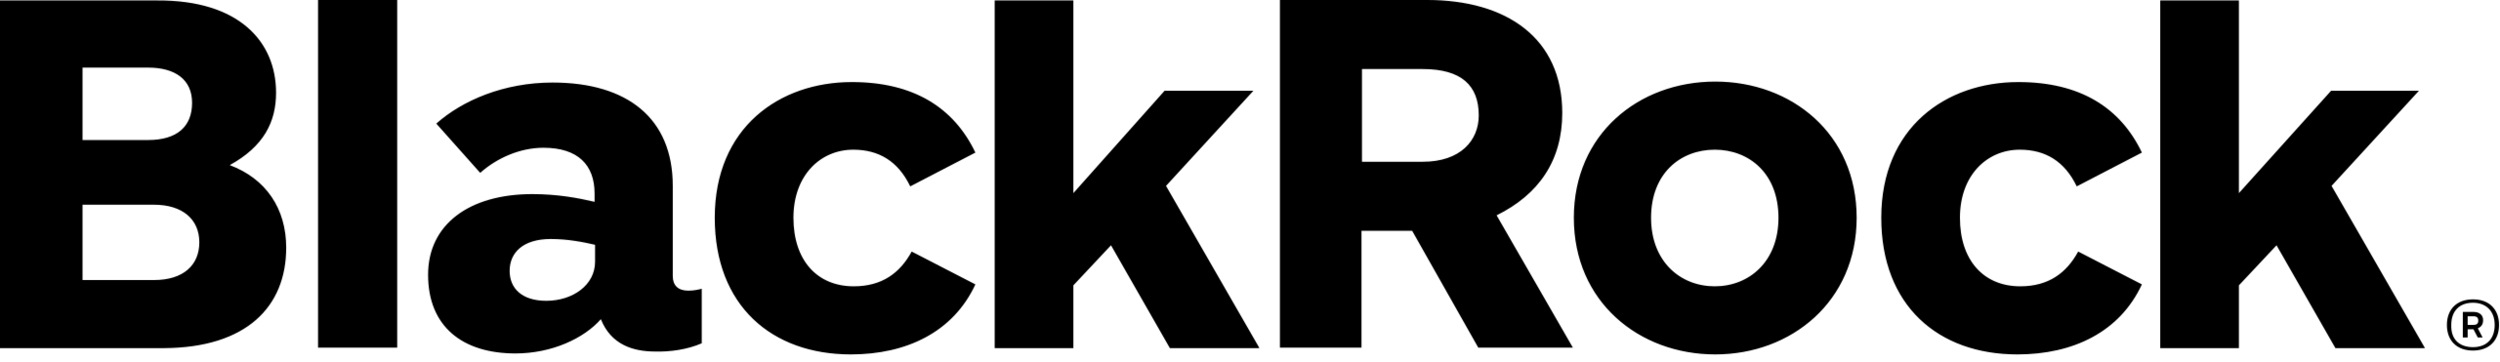 BlackRock - Logo.png